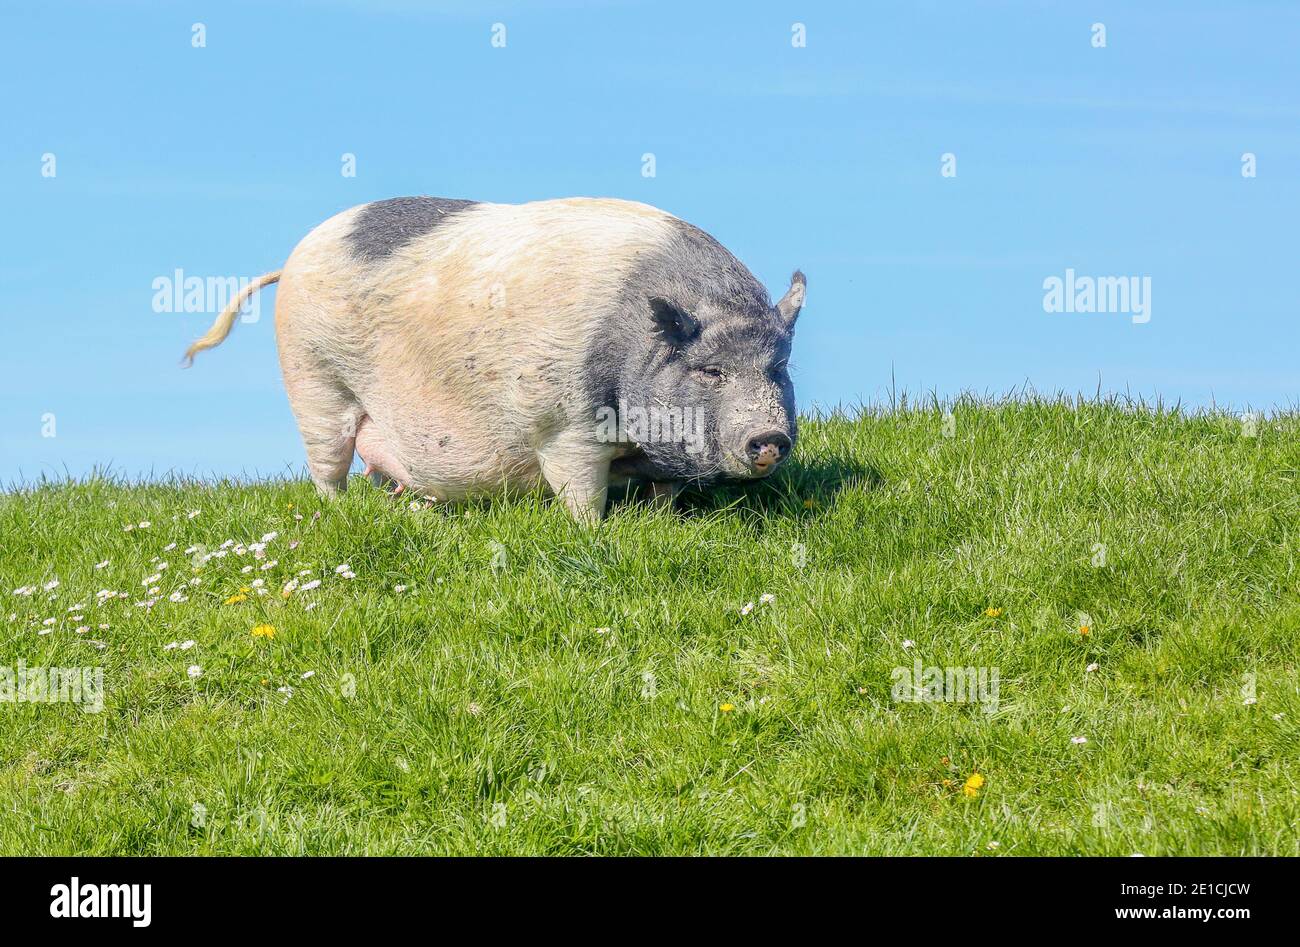 Auf einem Deich in Ostfriesland, Teil einer Farm, steht ein graues Schweineballschwein (Suidae). Stockfoto